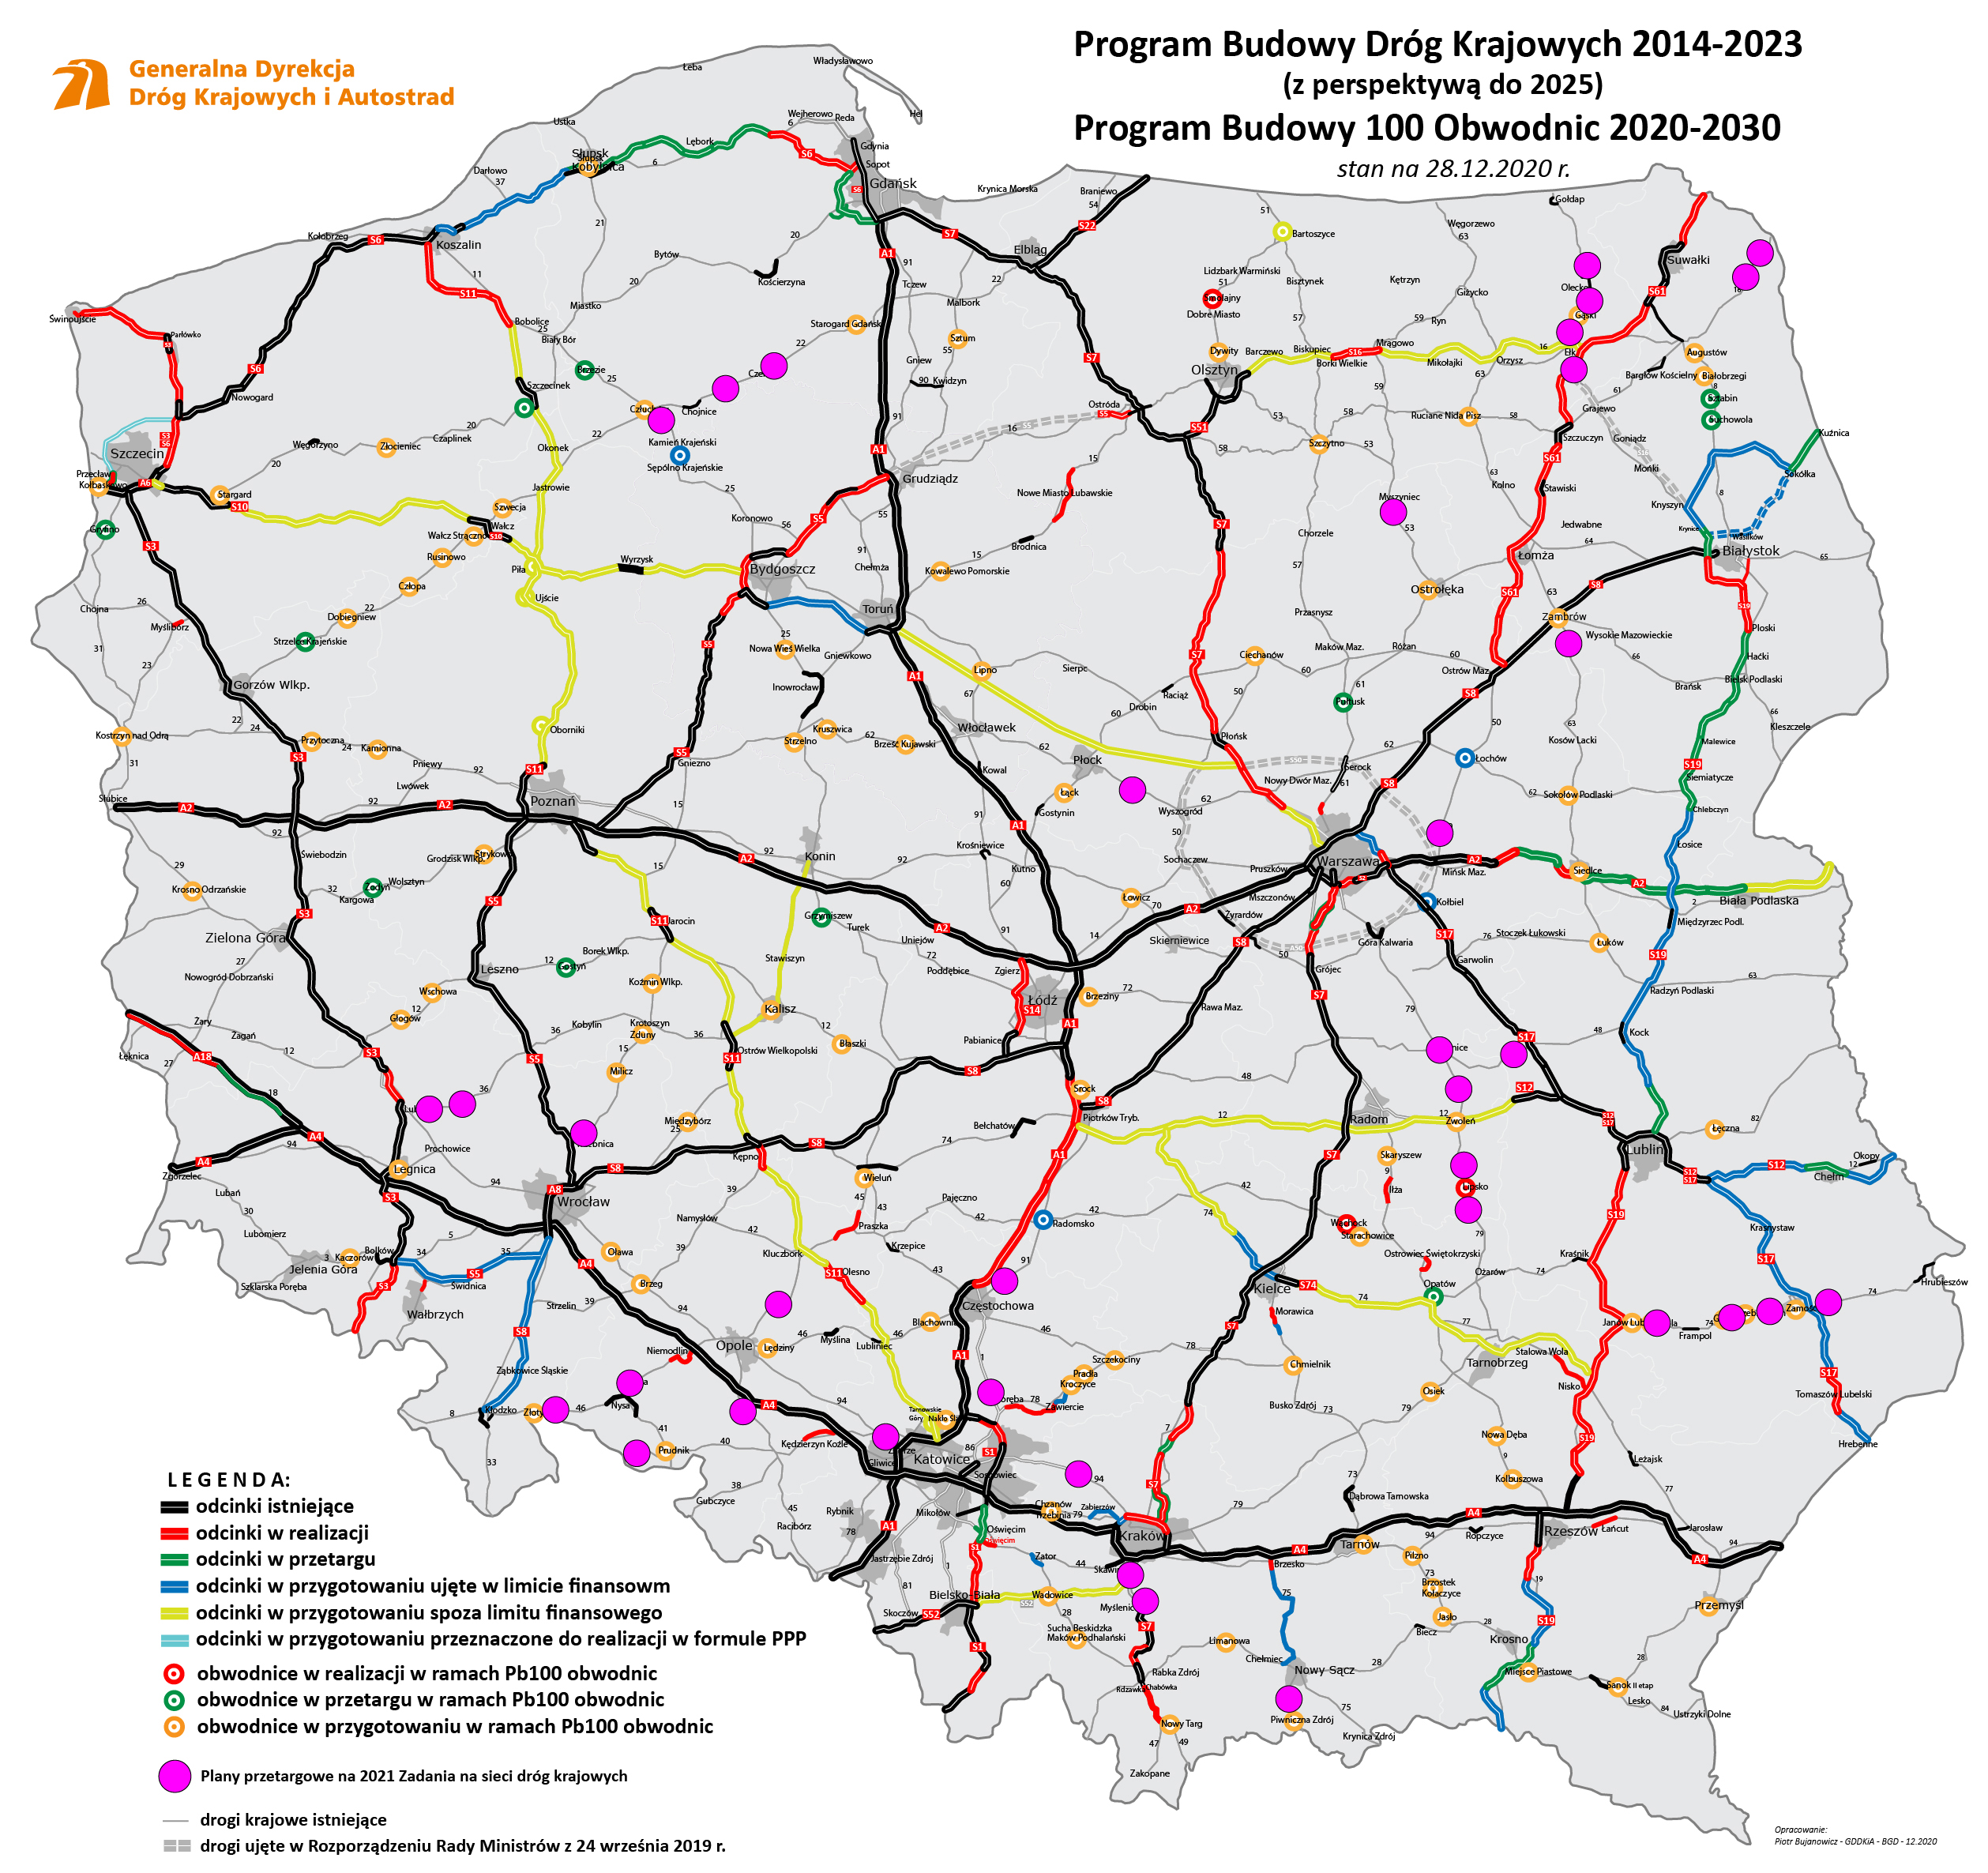 Polskie drogi - perspektywa budowy nowych dróg do 2025 i obwodnic do 2030